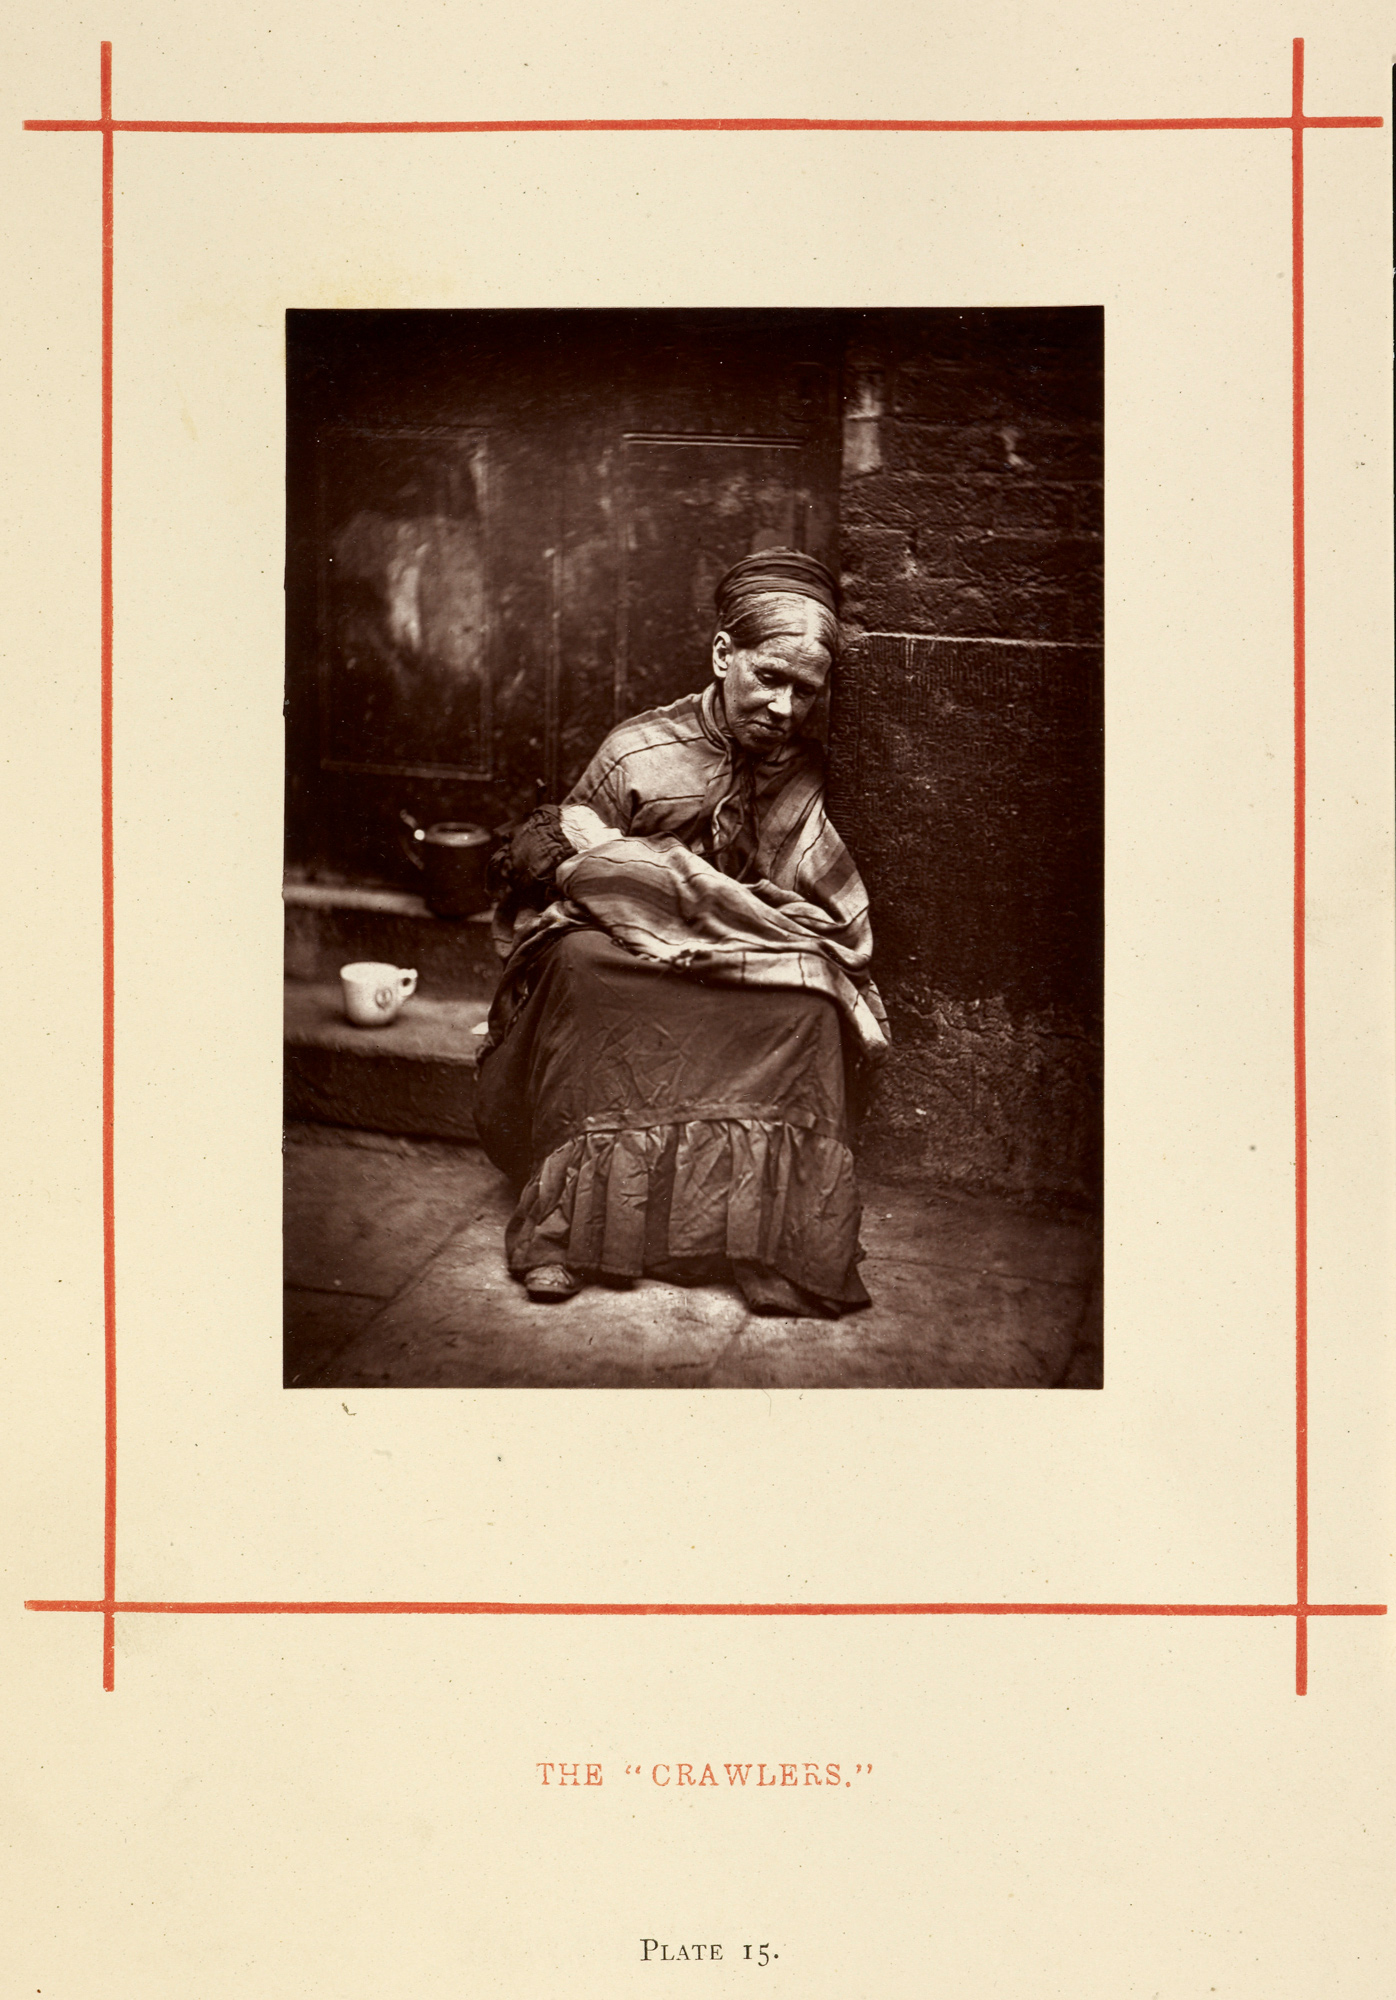 “The ‘Crawlers’” [Os ‘Rastejantes’], fotografia de John Thomson, publicada em seu Street Life in London (A vida urbana em Londres, 1876-7).